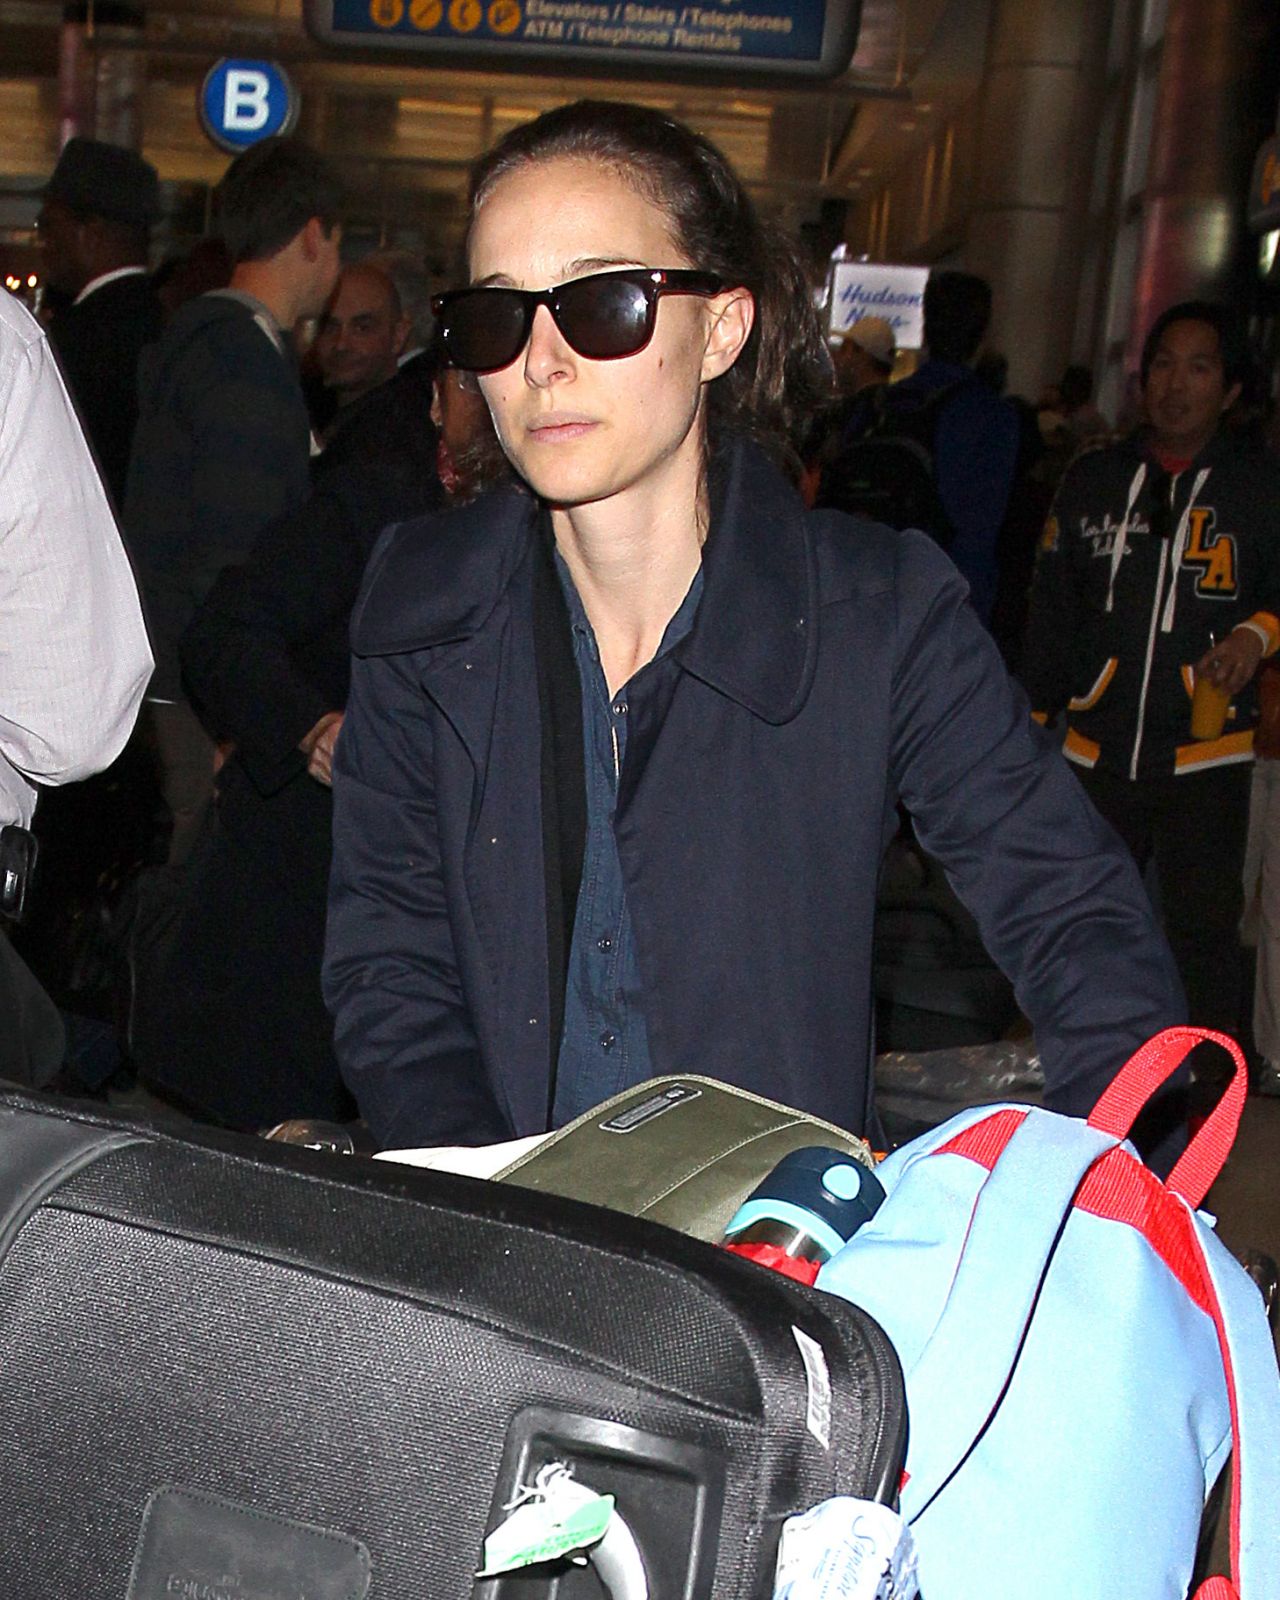 Natalie Portman at LAX Airport - November 2013 • CelebMafia